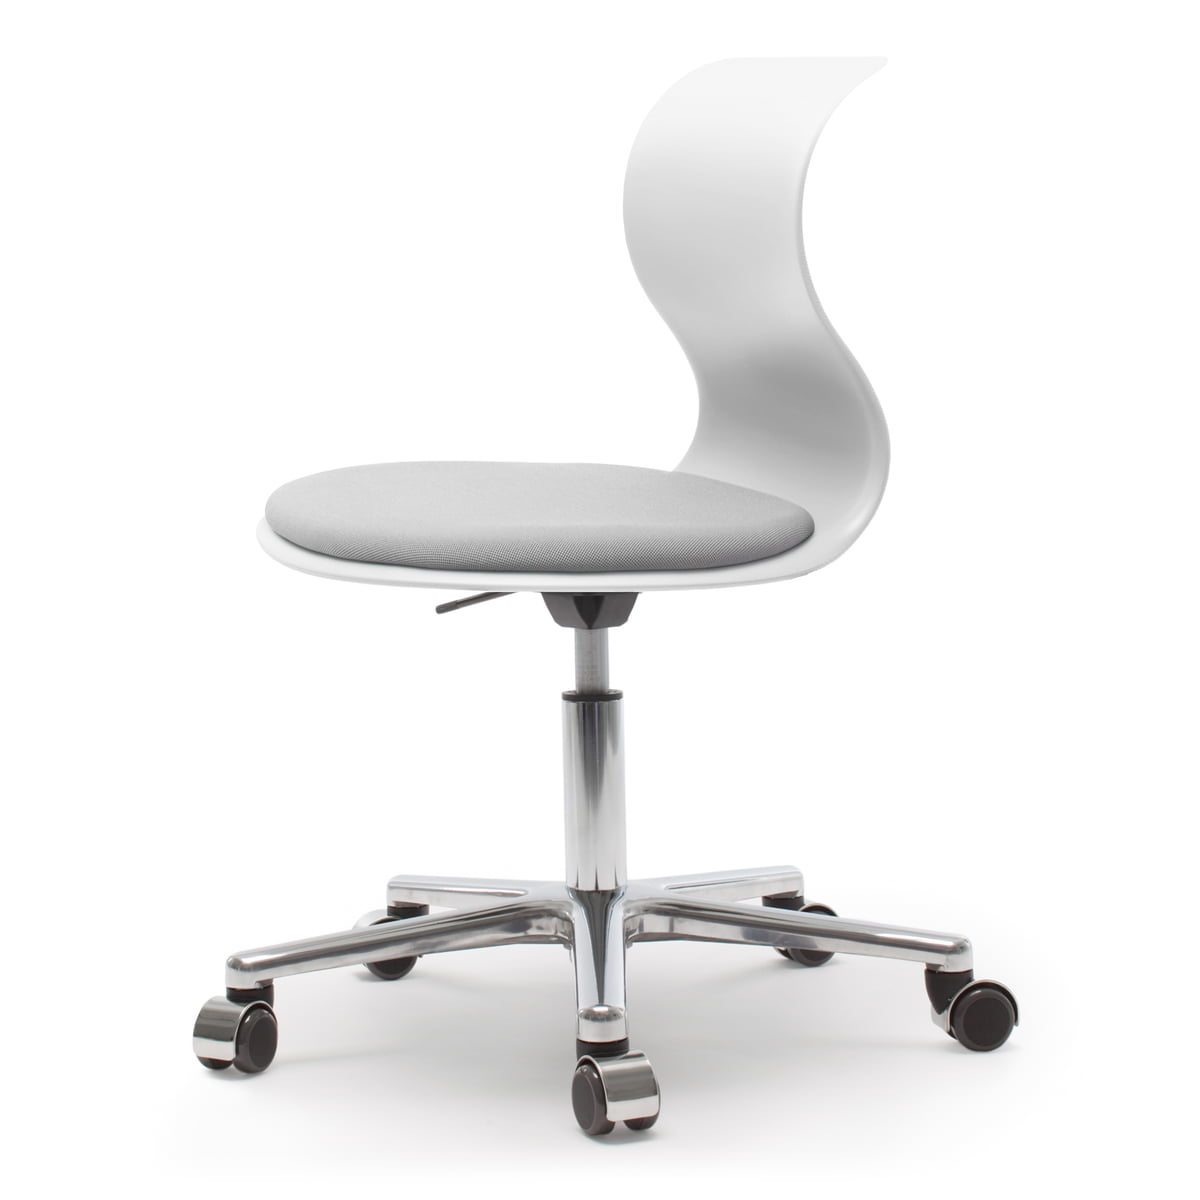 Flötotto - Pro 6 fauteuil pivotant avec revêtement d'assise gris granit Nexus UNY 01, aluminium poli / blanc neige, roulettes souples (avec revêtement poli)